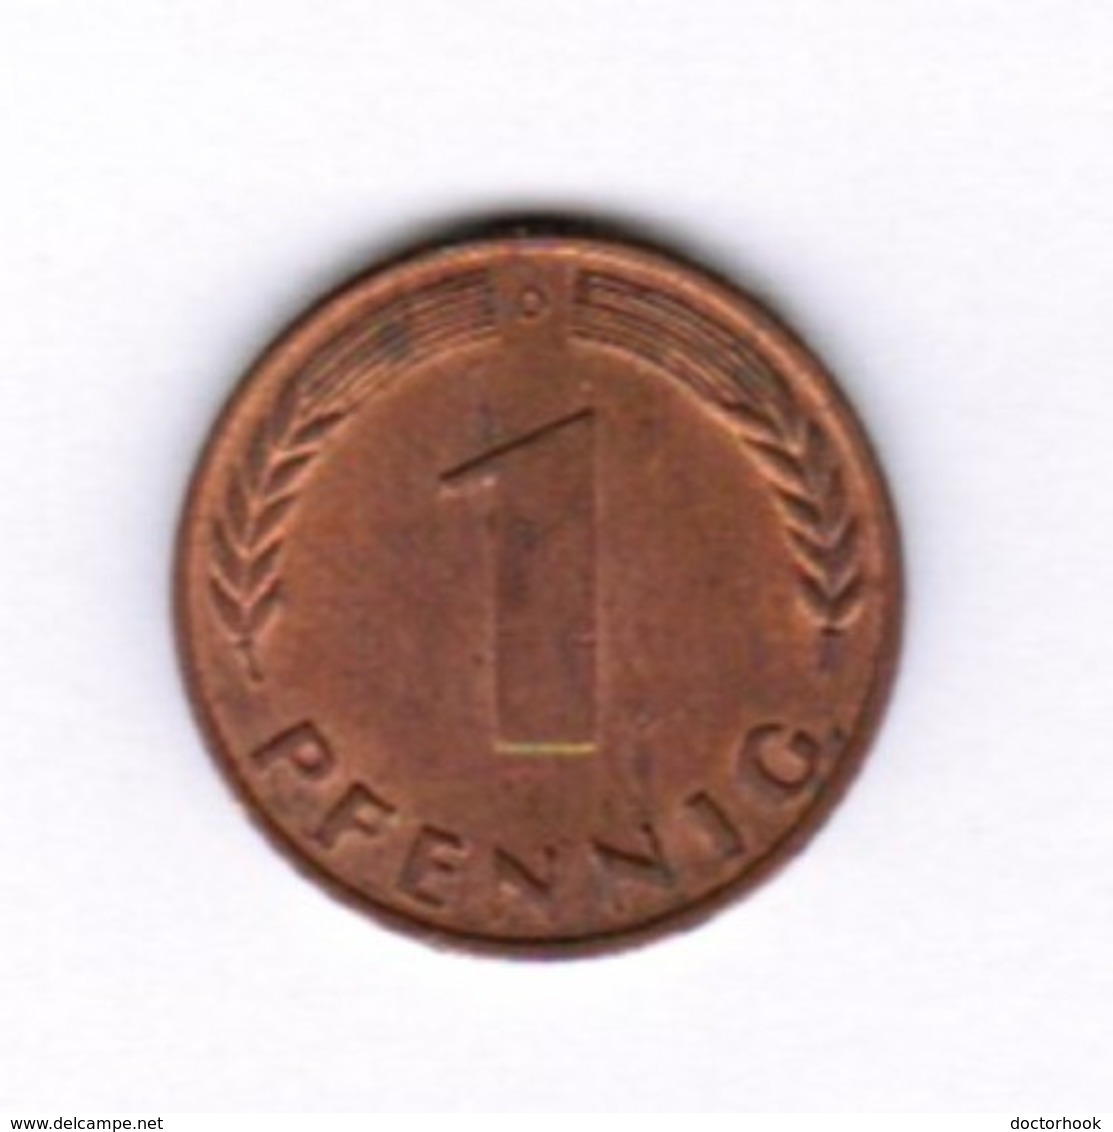 GERMANY  1 PFENNIG 1966 "D" (KM # 105) #5283 - 1 Pfennig